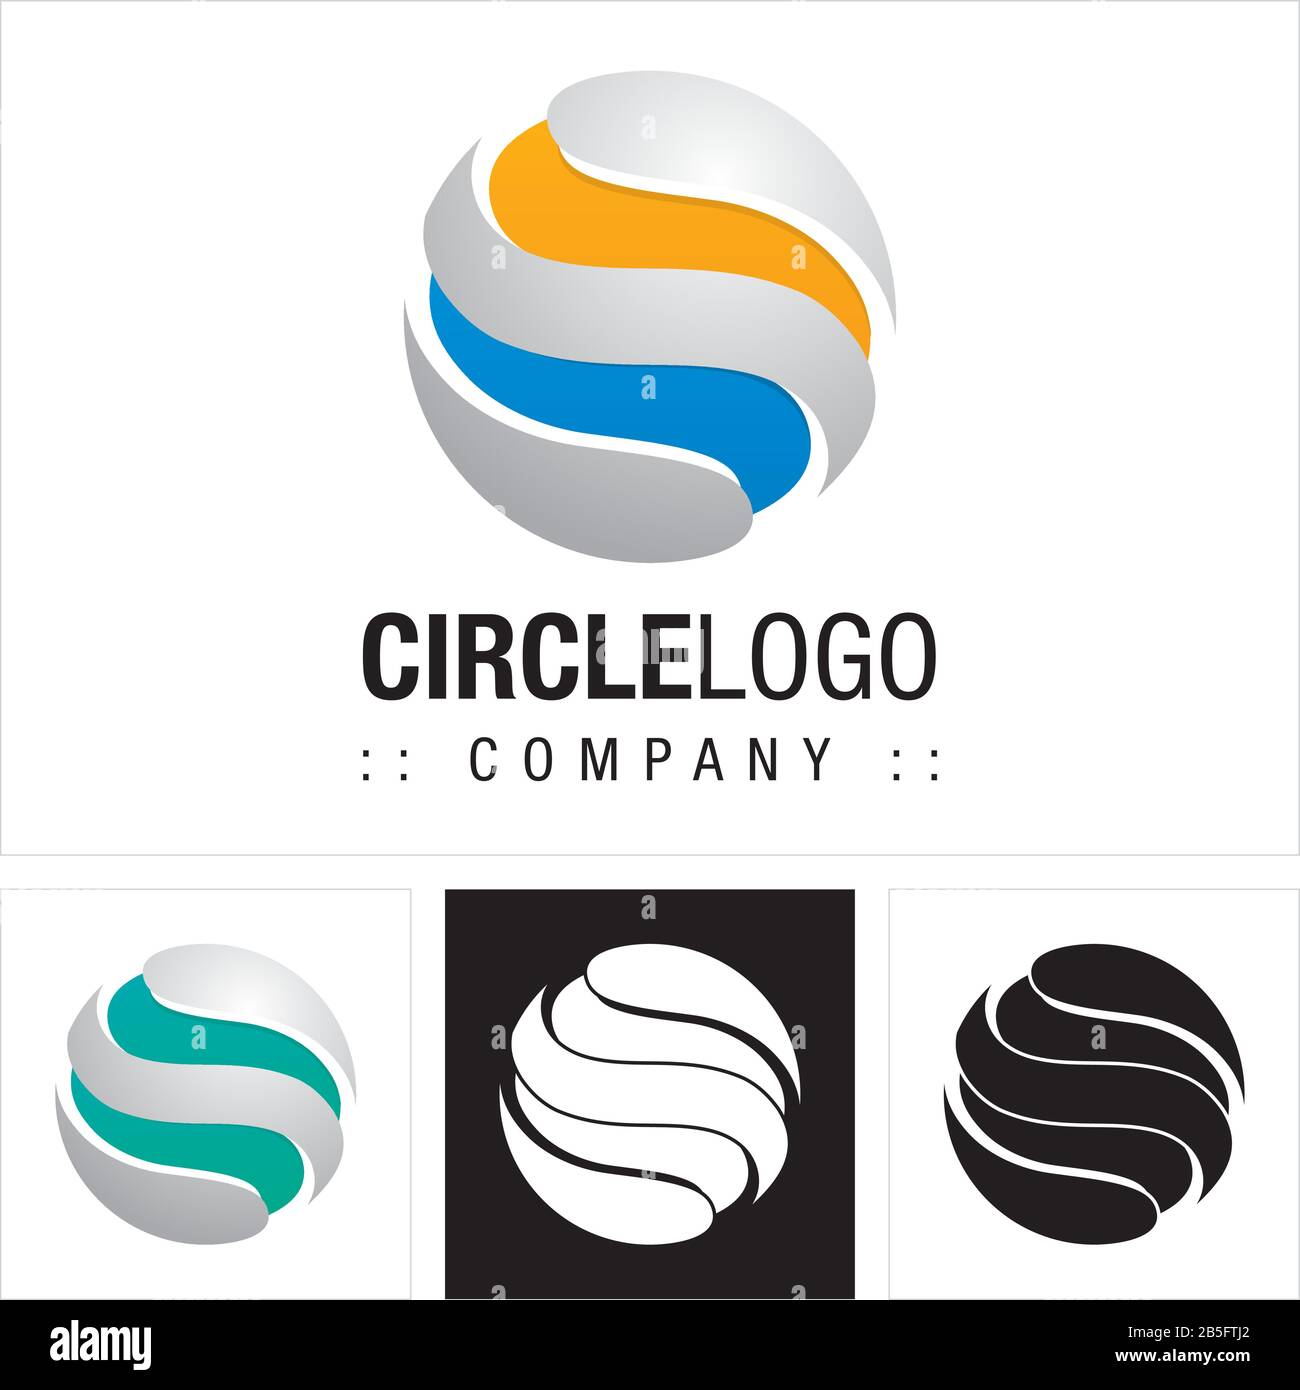 Cerchio (Sfera, Onde, Strisce) Logo Di Vector Symbol Company (Logo). Globe Earth World Technology 3d Layer Stile Icona Illustrazione. Elegante E Moderno Illustrazione Vettoriale